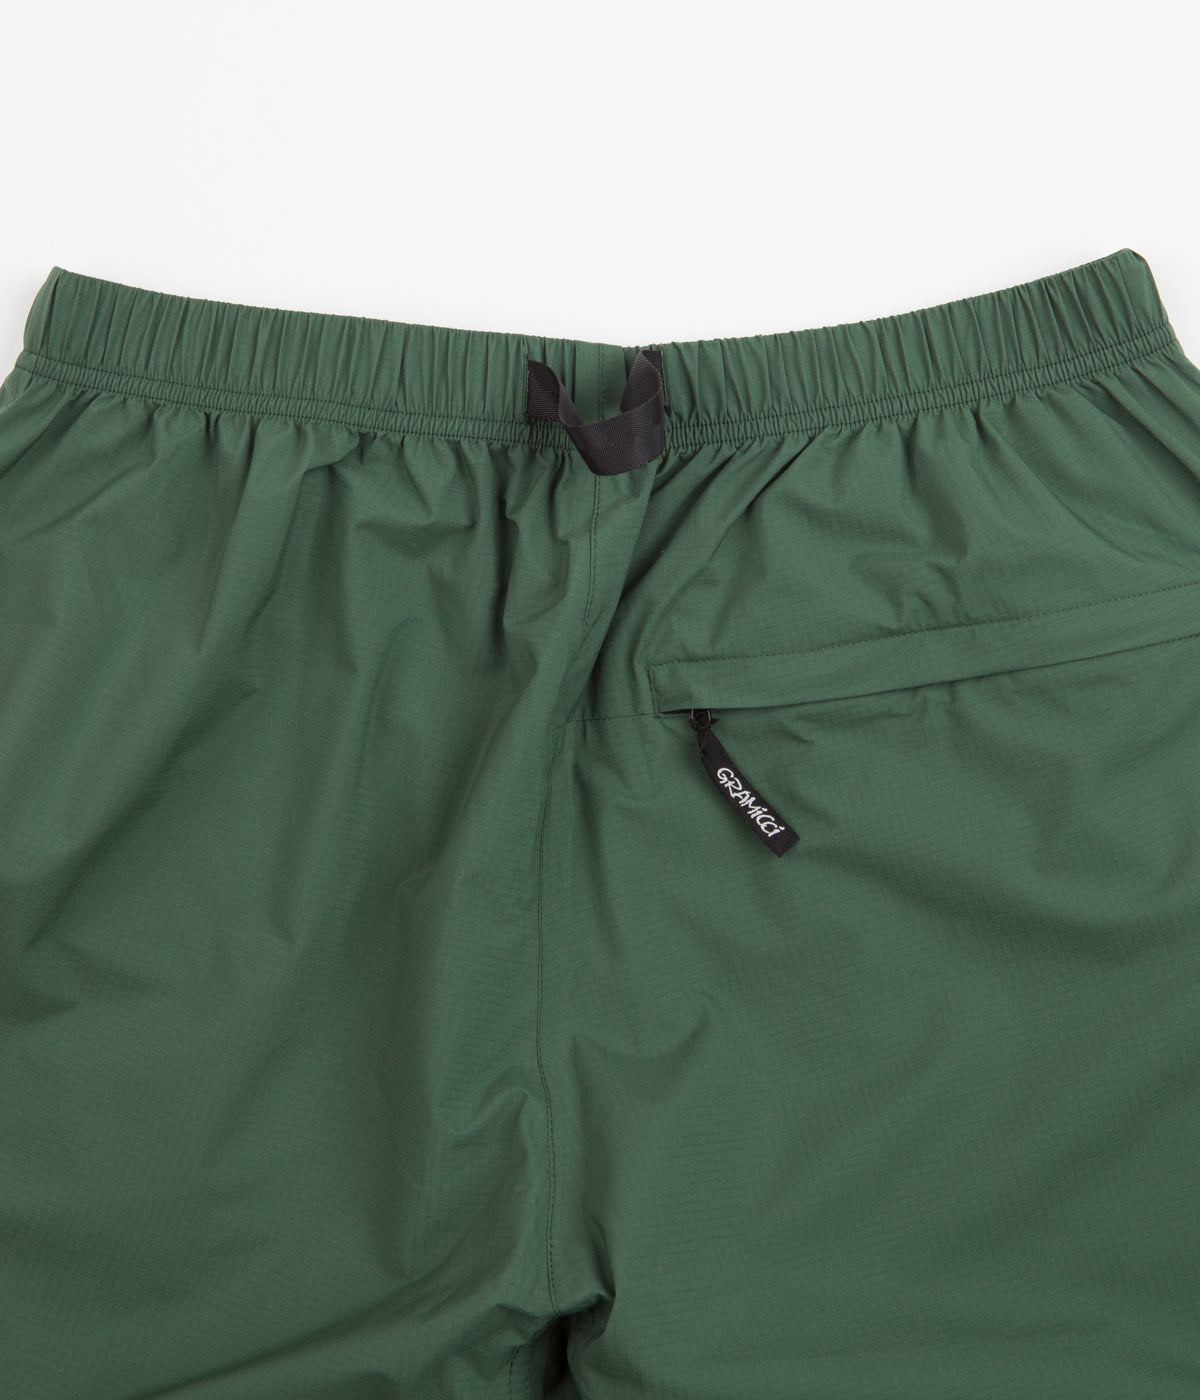 Gramicci Pertex Packable Pants - Evergreen | Flatspot